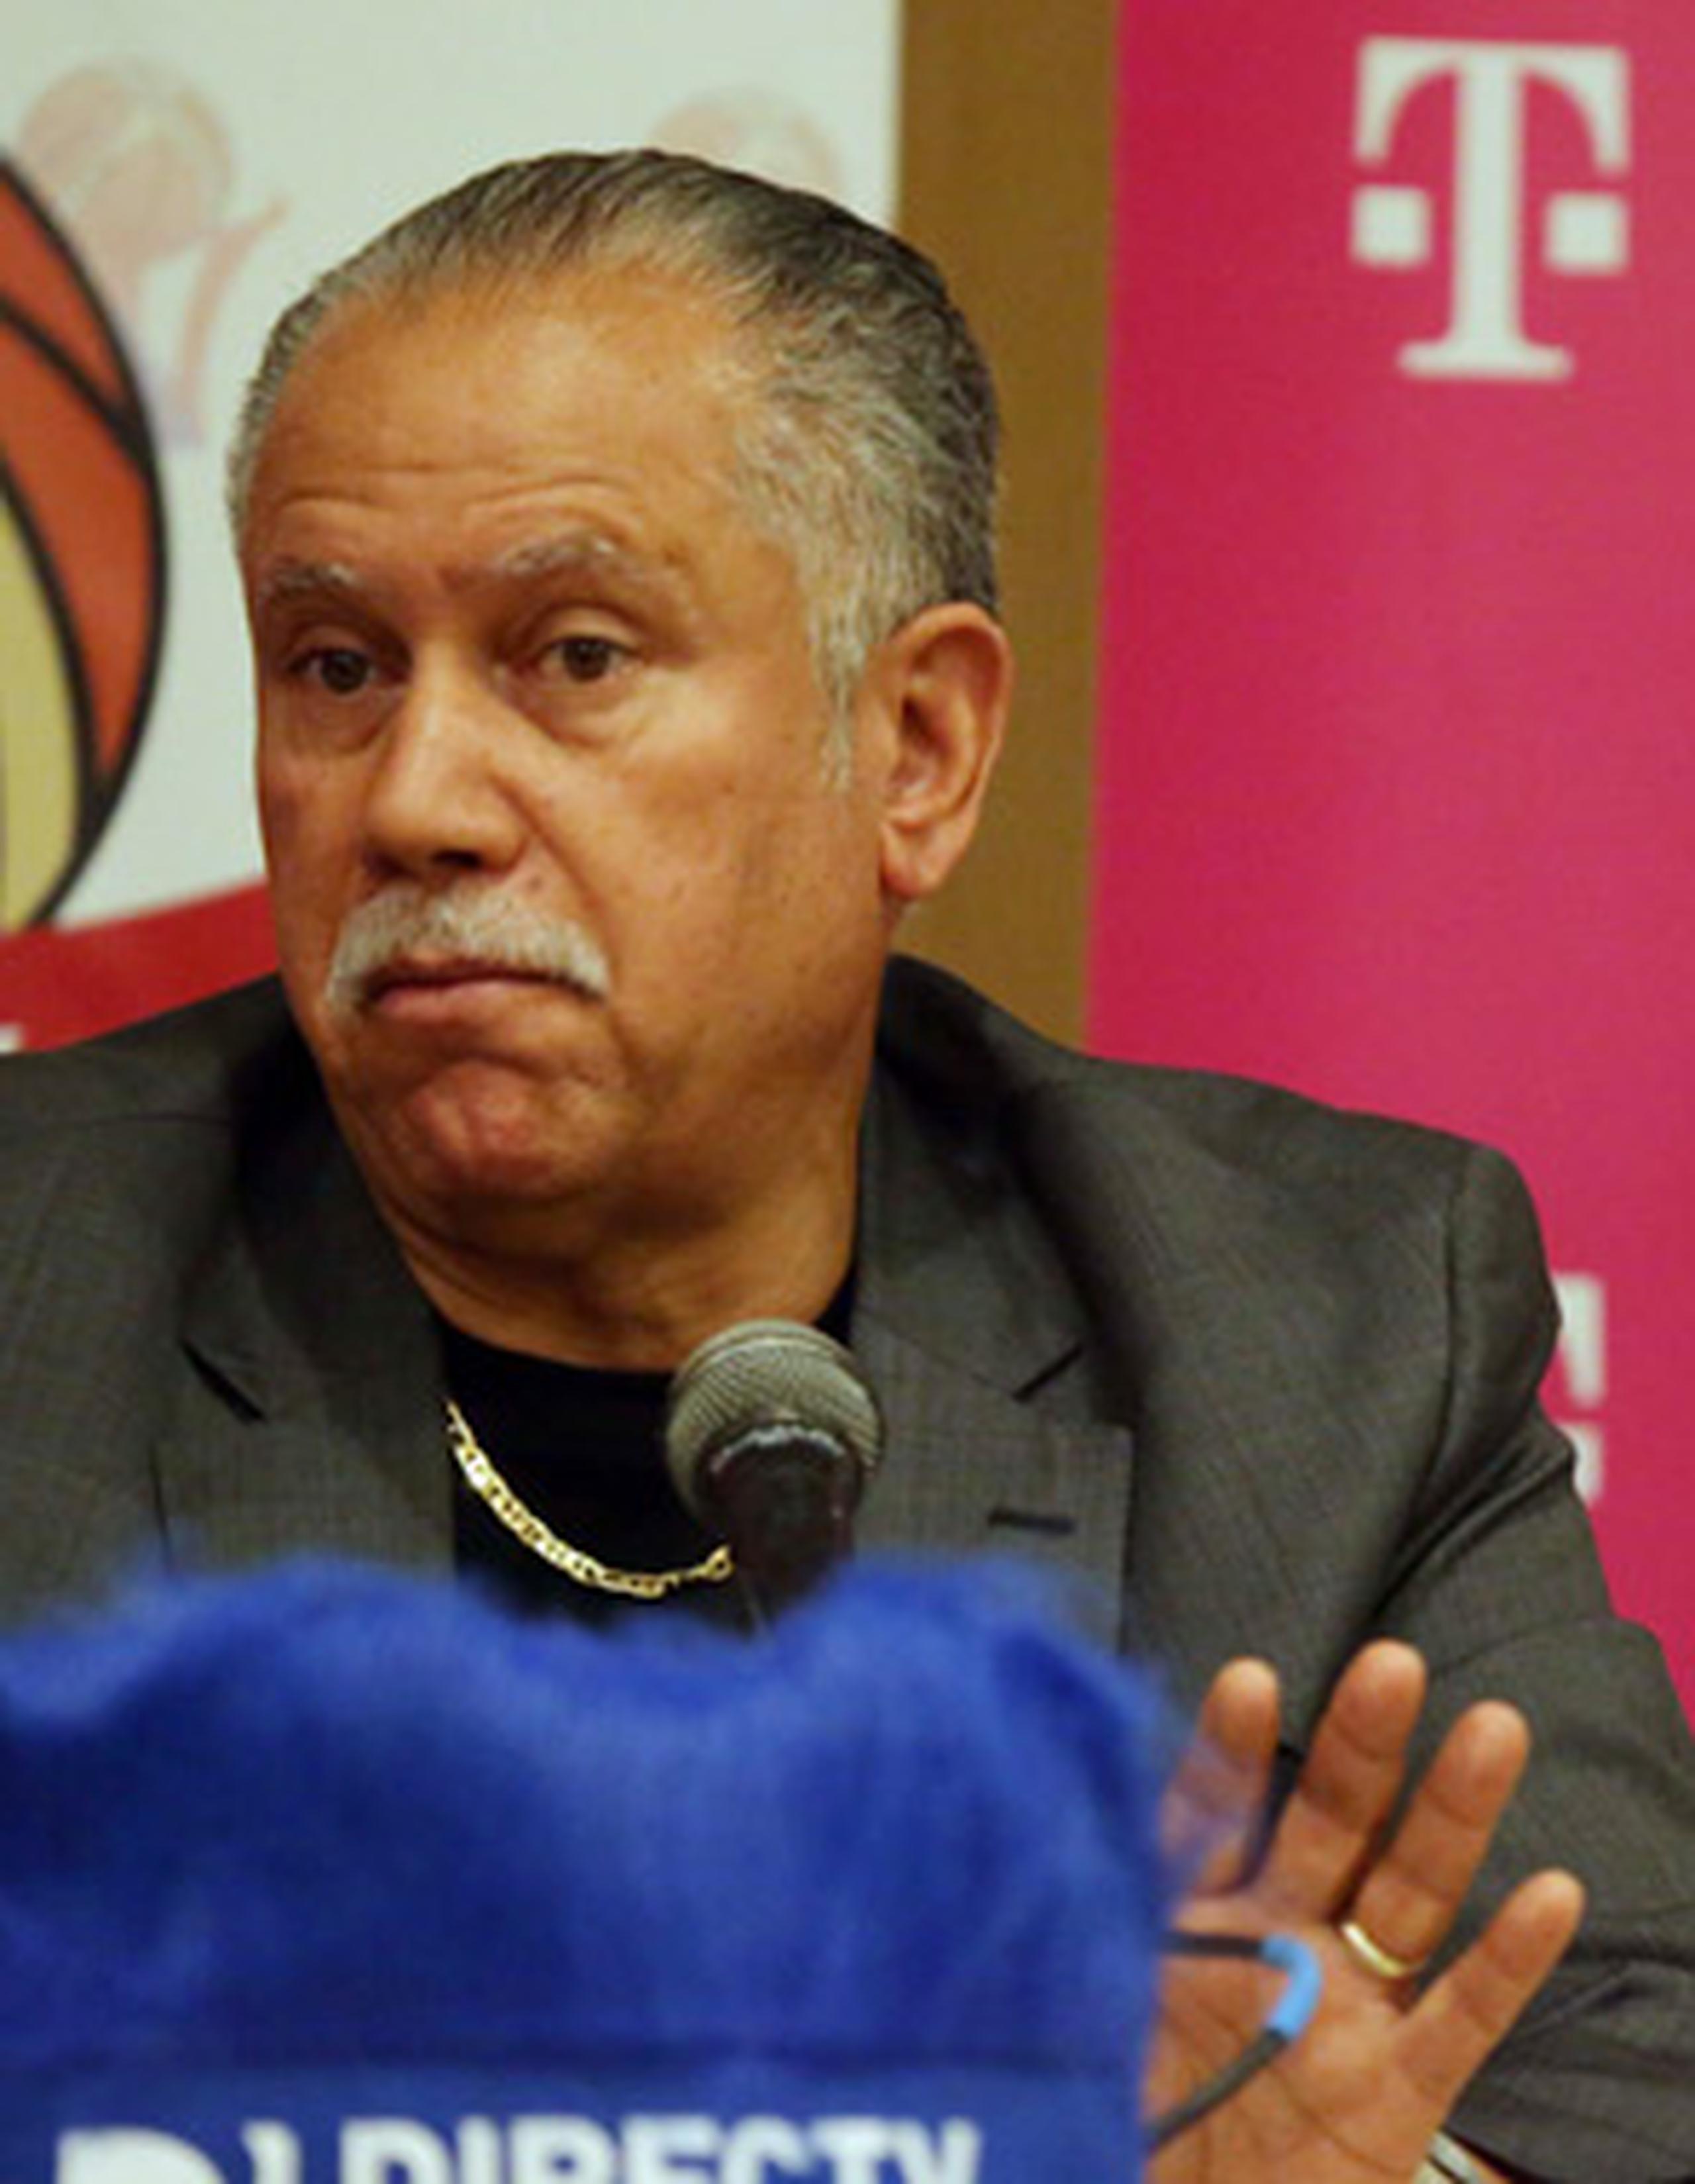 “Considero que fueron comentarios fuera de lugar por parte del señor Ortiz, pues es un funcionario de FIBA, pero no le hago caso", dijo Beltrán.